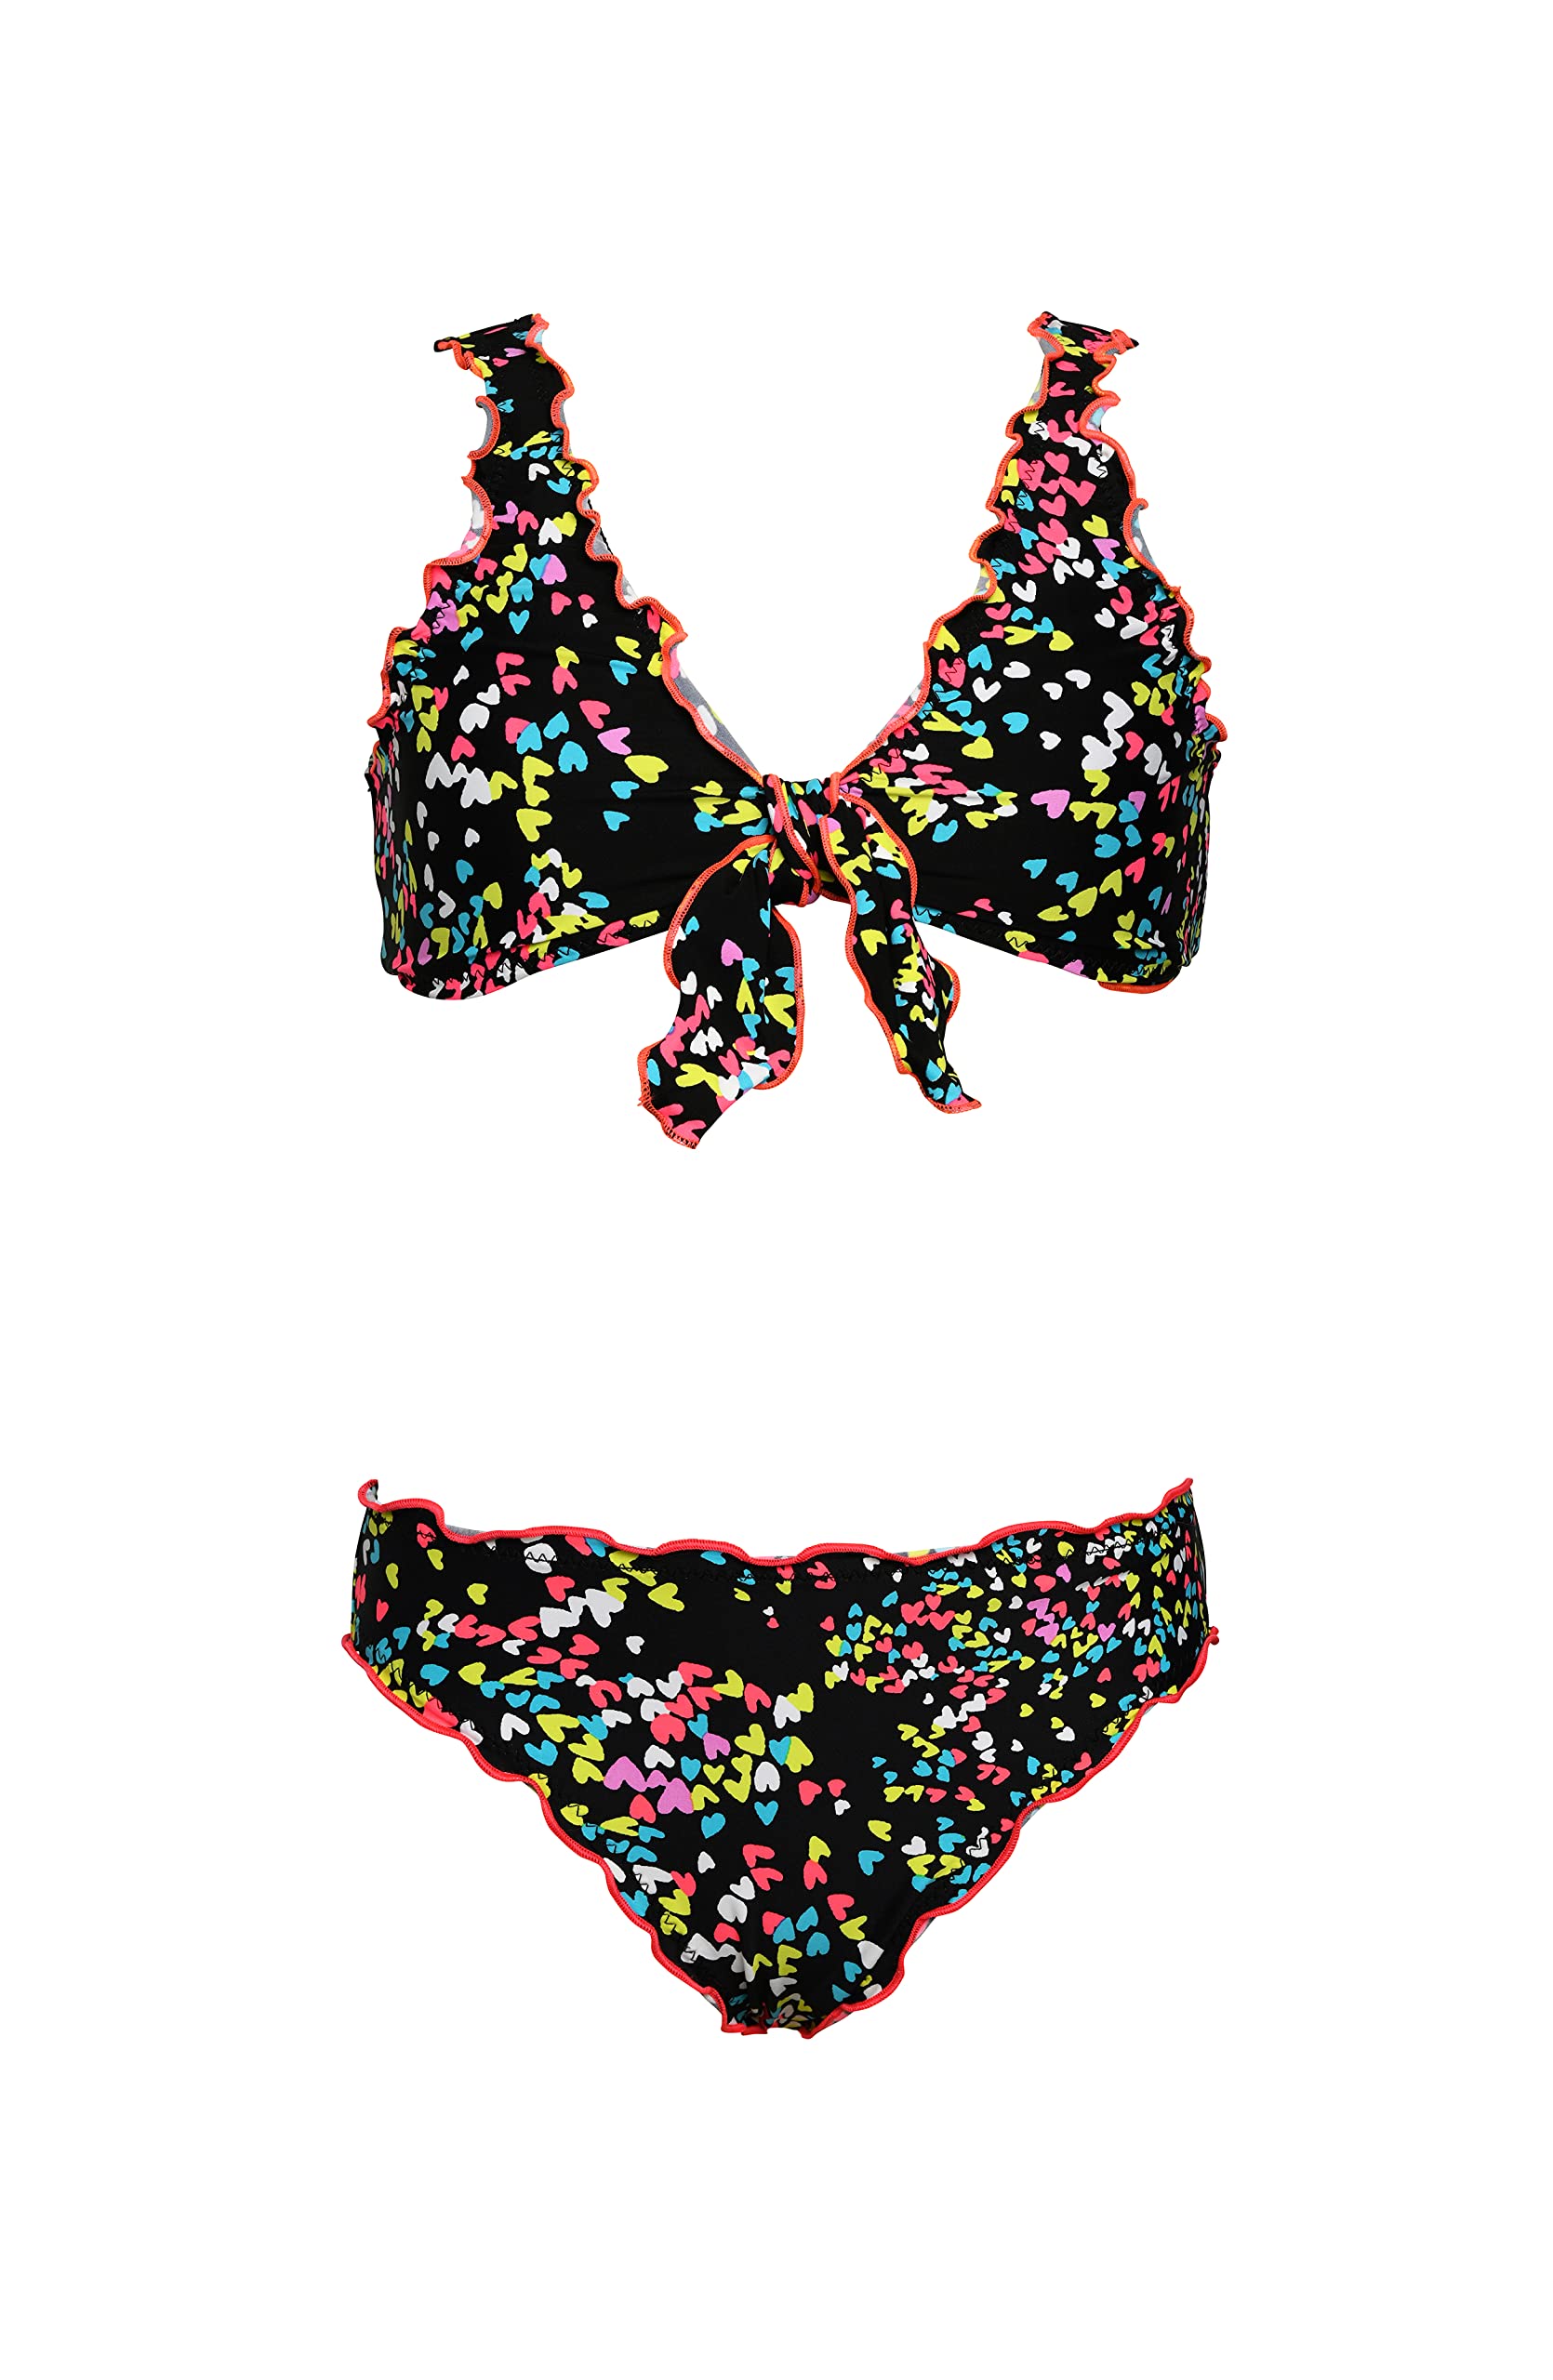 Hobie Girls Bralette Top and Hipster Bikini Bottom Swimsuit Set